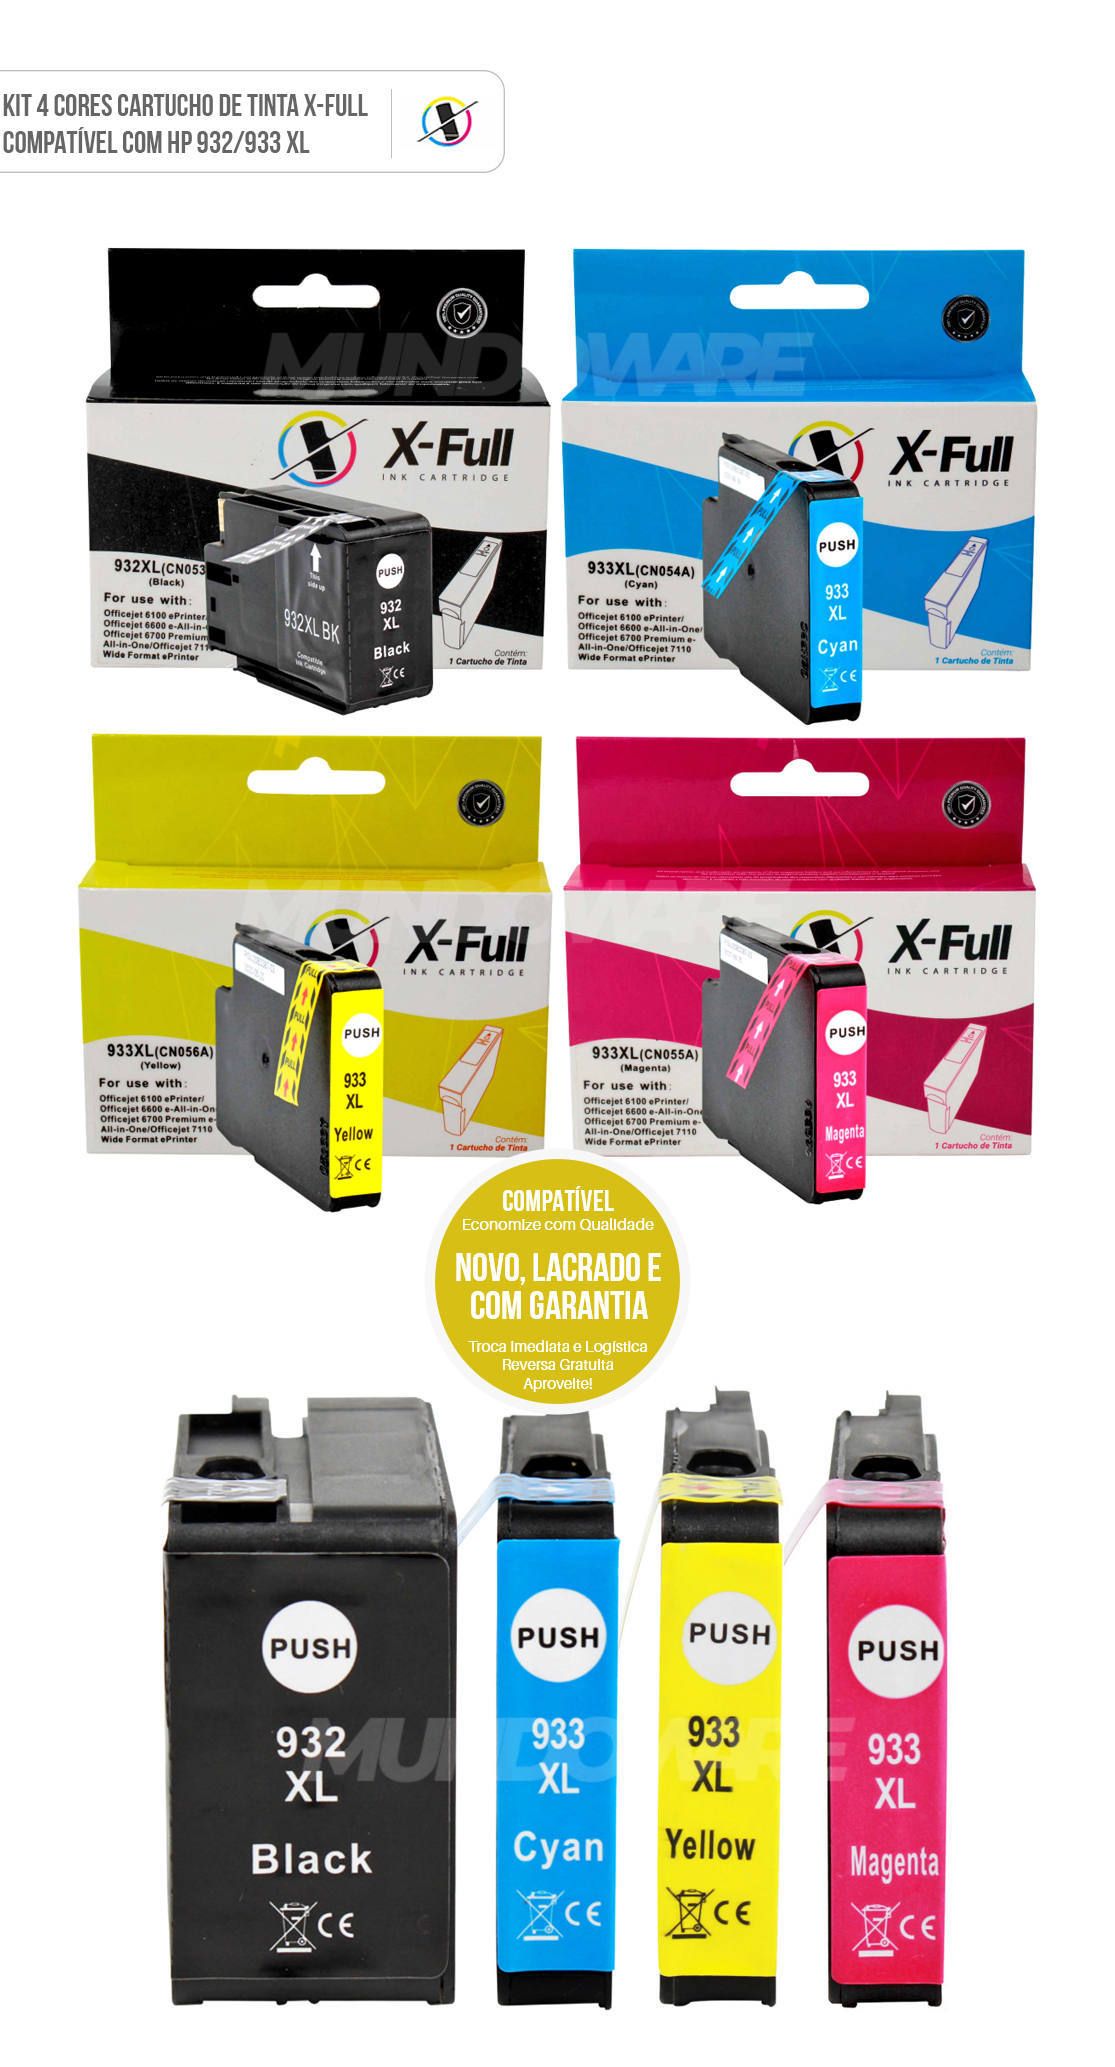 Kit 4 Cores Cartucho de Tinta X-Full Compatível com HP 932xl 933xl para Impressora 6600 6700 7100A 7110 7510 7610 7612